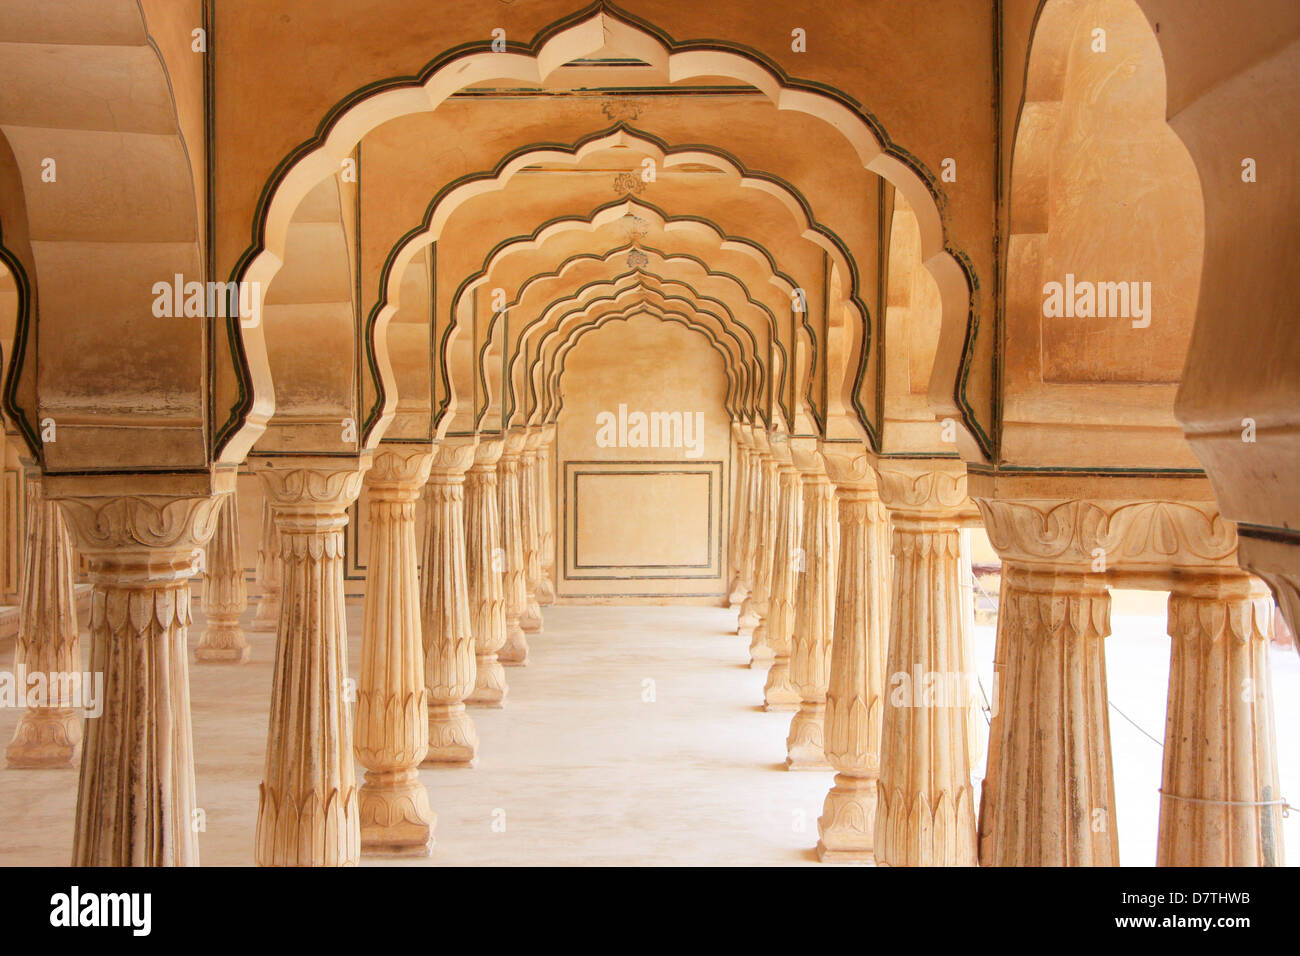 Salle à colonnes, Fort Amber, Jaipur, Rajasthan, Inde Banque D'Images